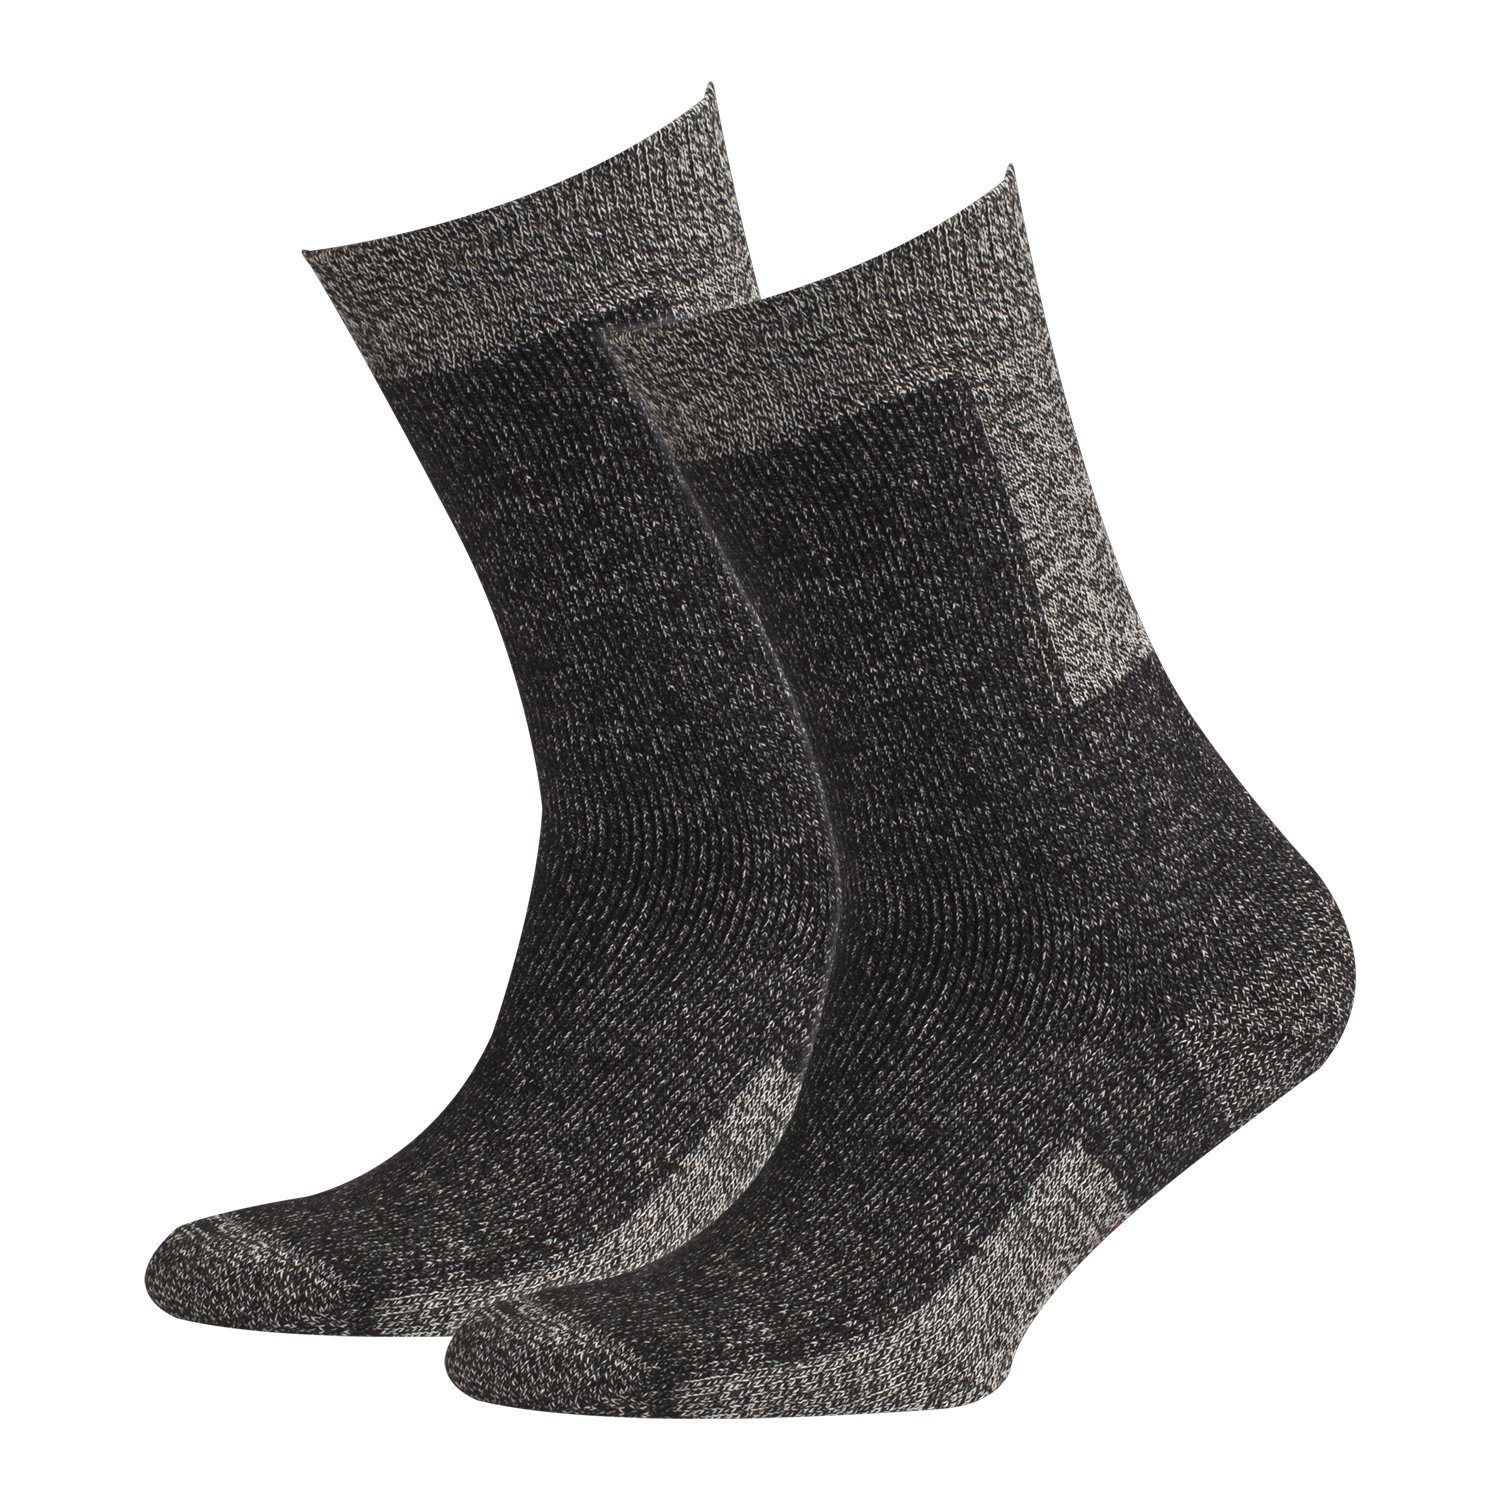 COOL7 Socken Damen und Herren Socken Outdoor 2er Pack (2er Pack, 2er Pack)  optimale Passform, hochwertige Materialzusammensetzung, vorgewaschen